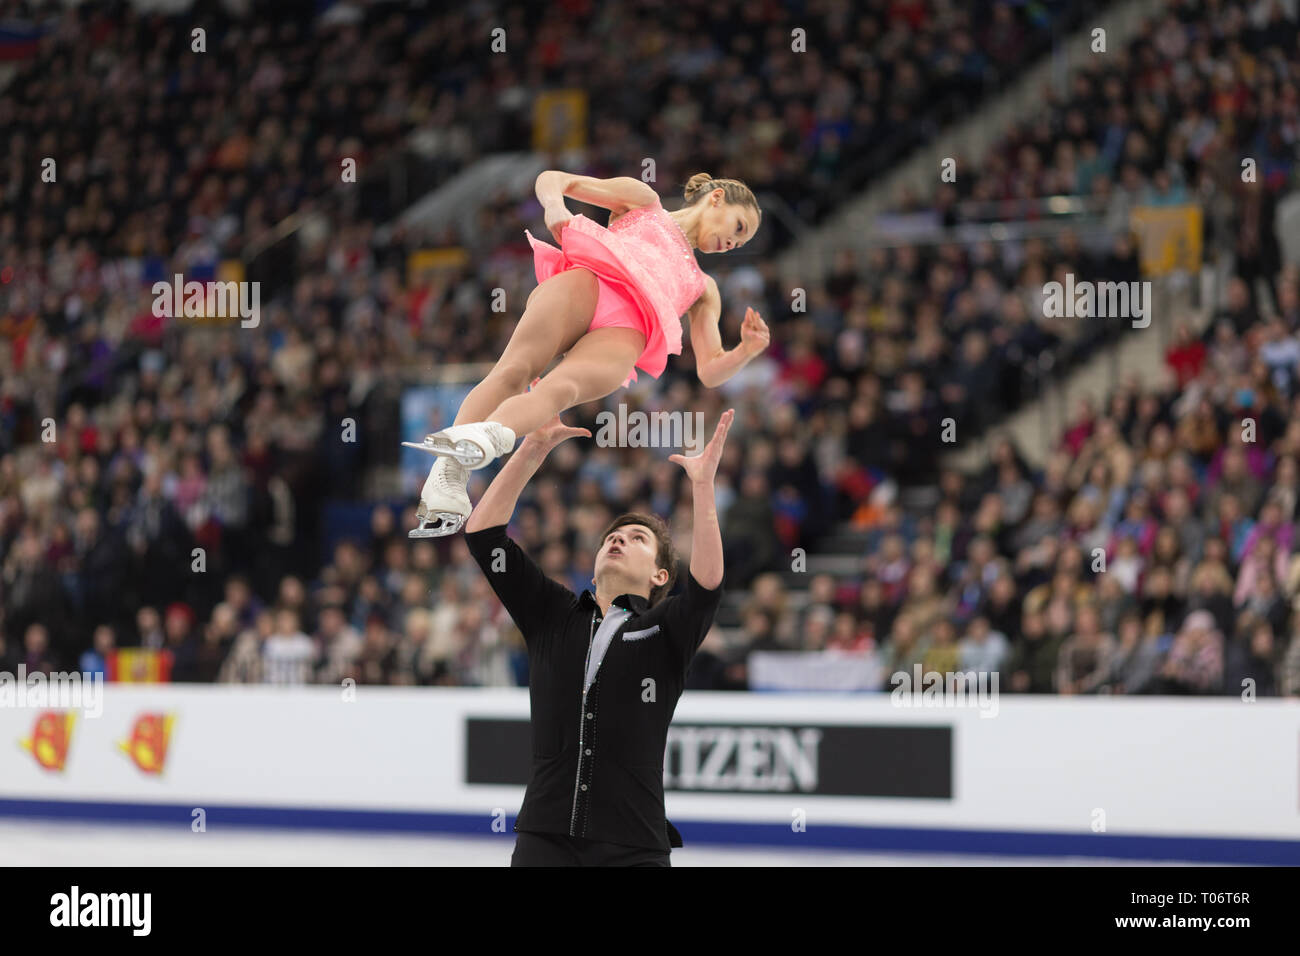 Daria Pavliuchenko and Denis Khodykin from Russia during 2019 European championships Stock Photo